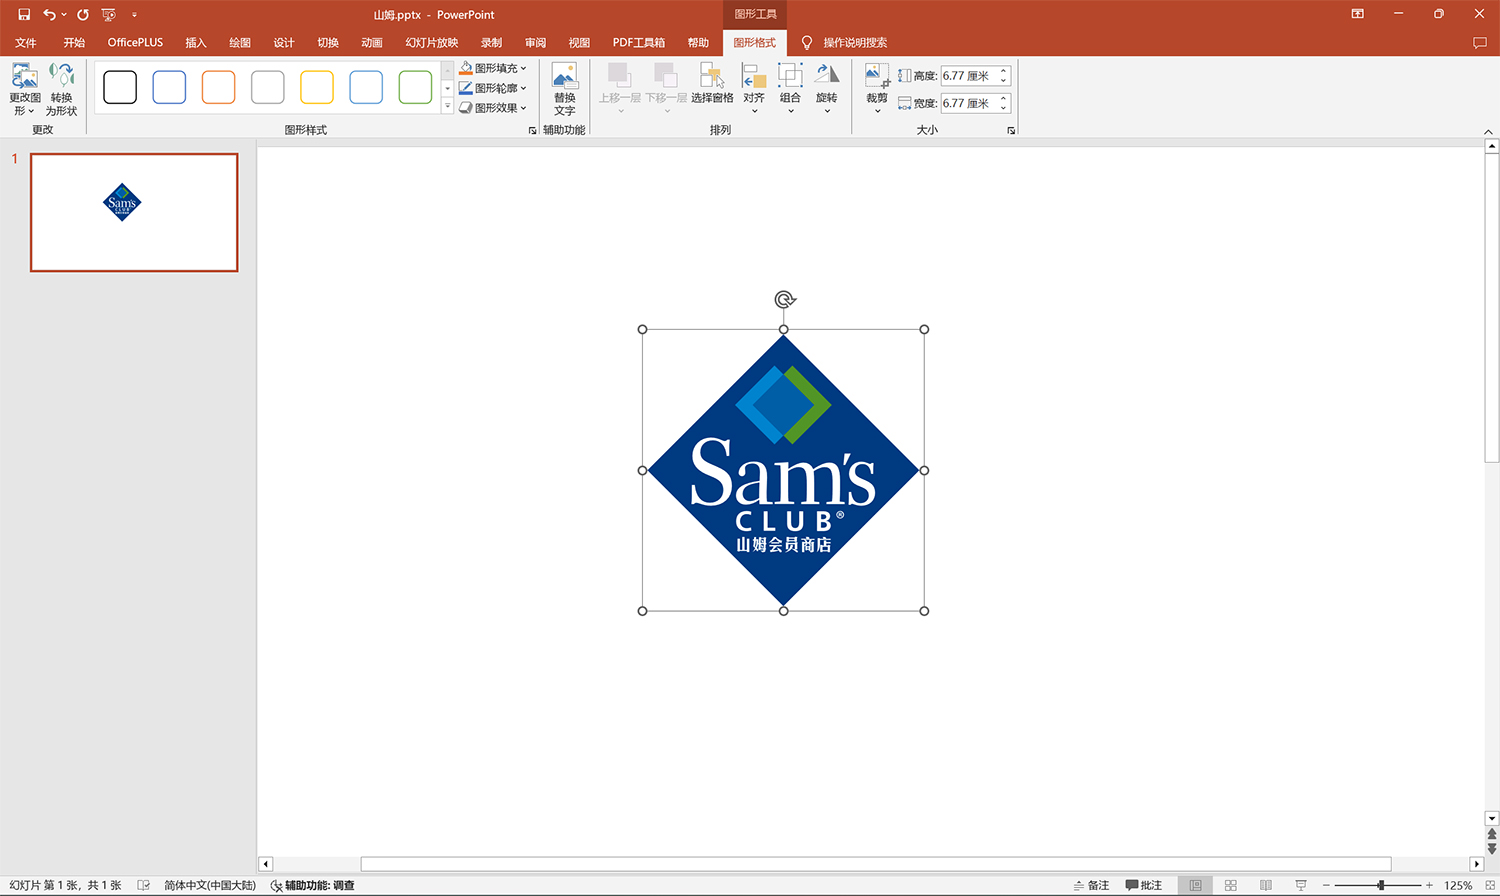 山姆会员商店logo矢量标志素材